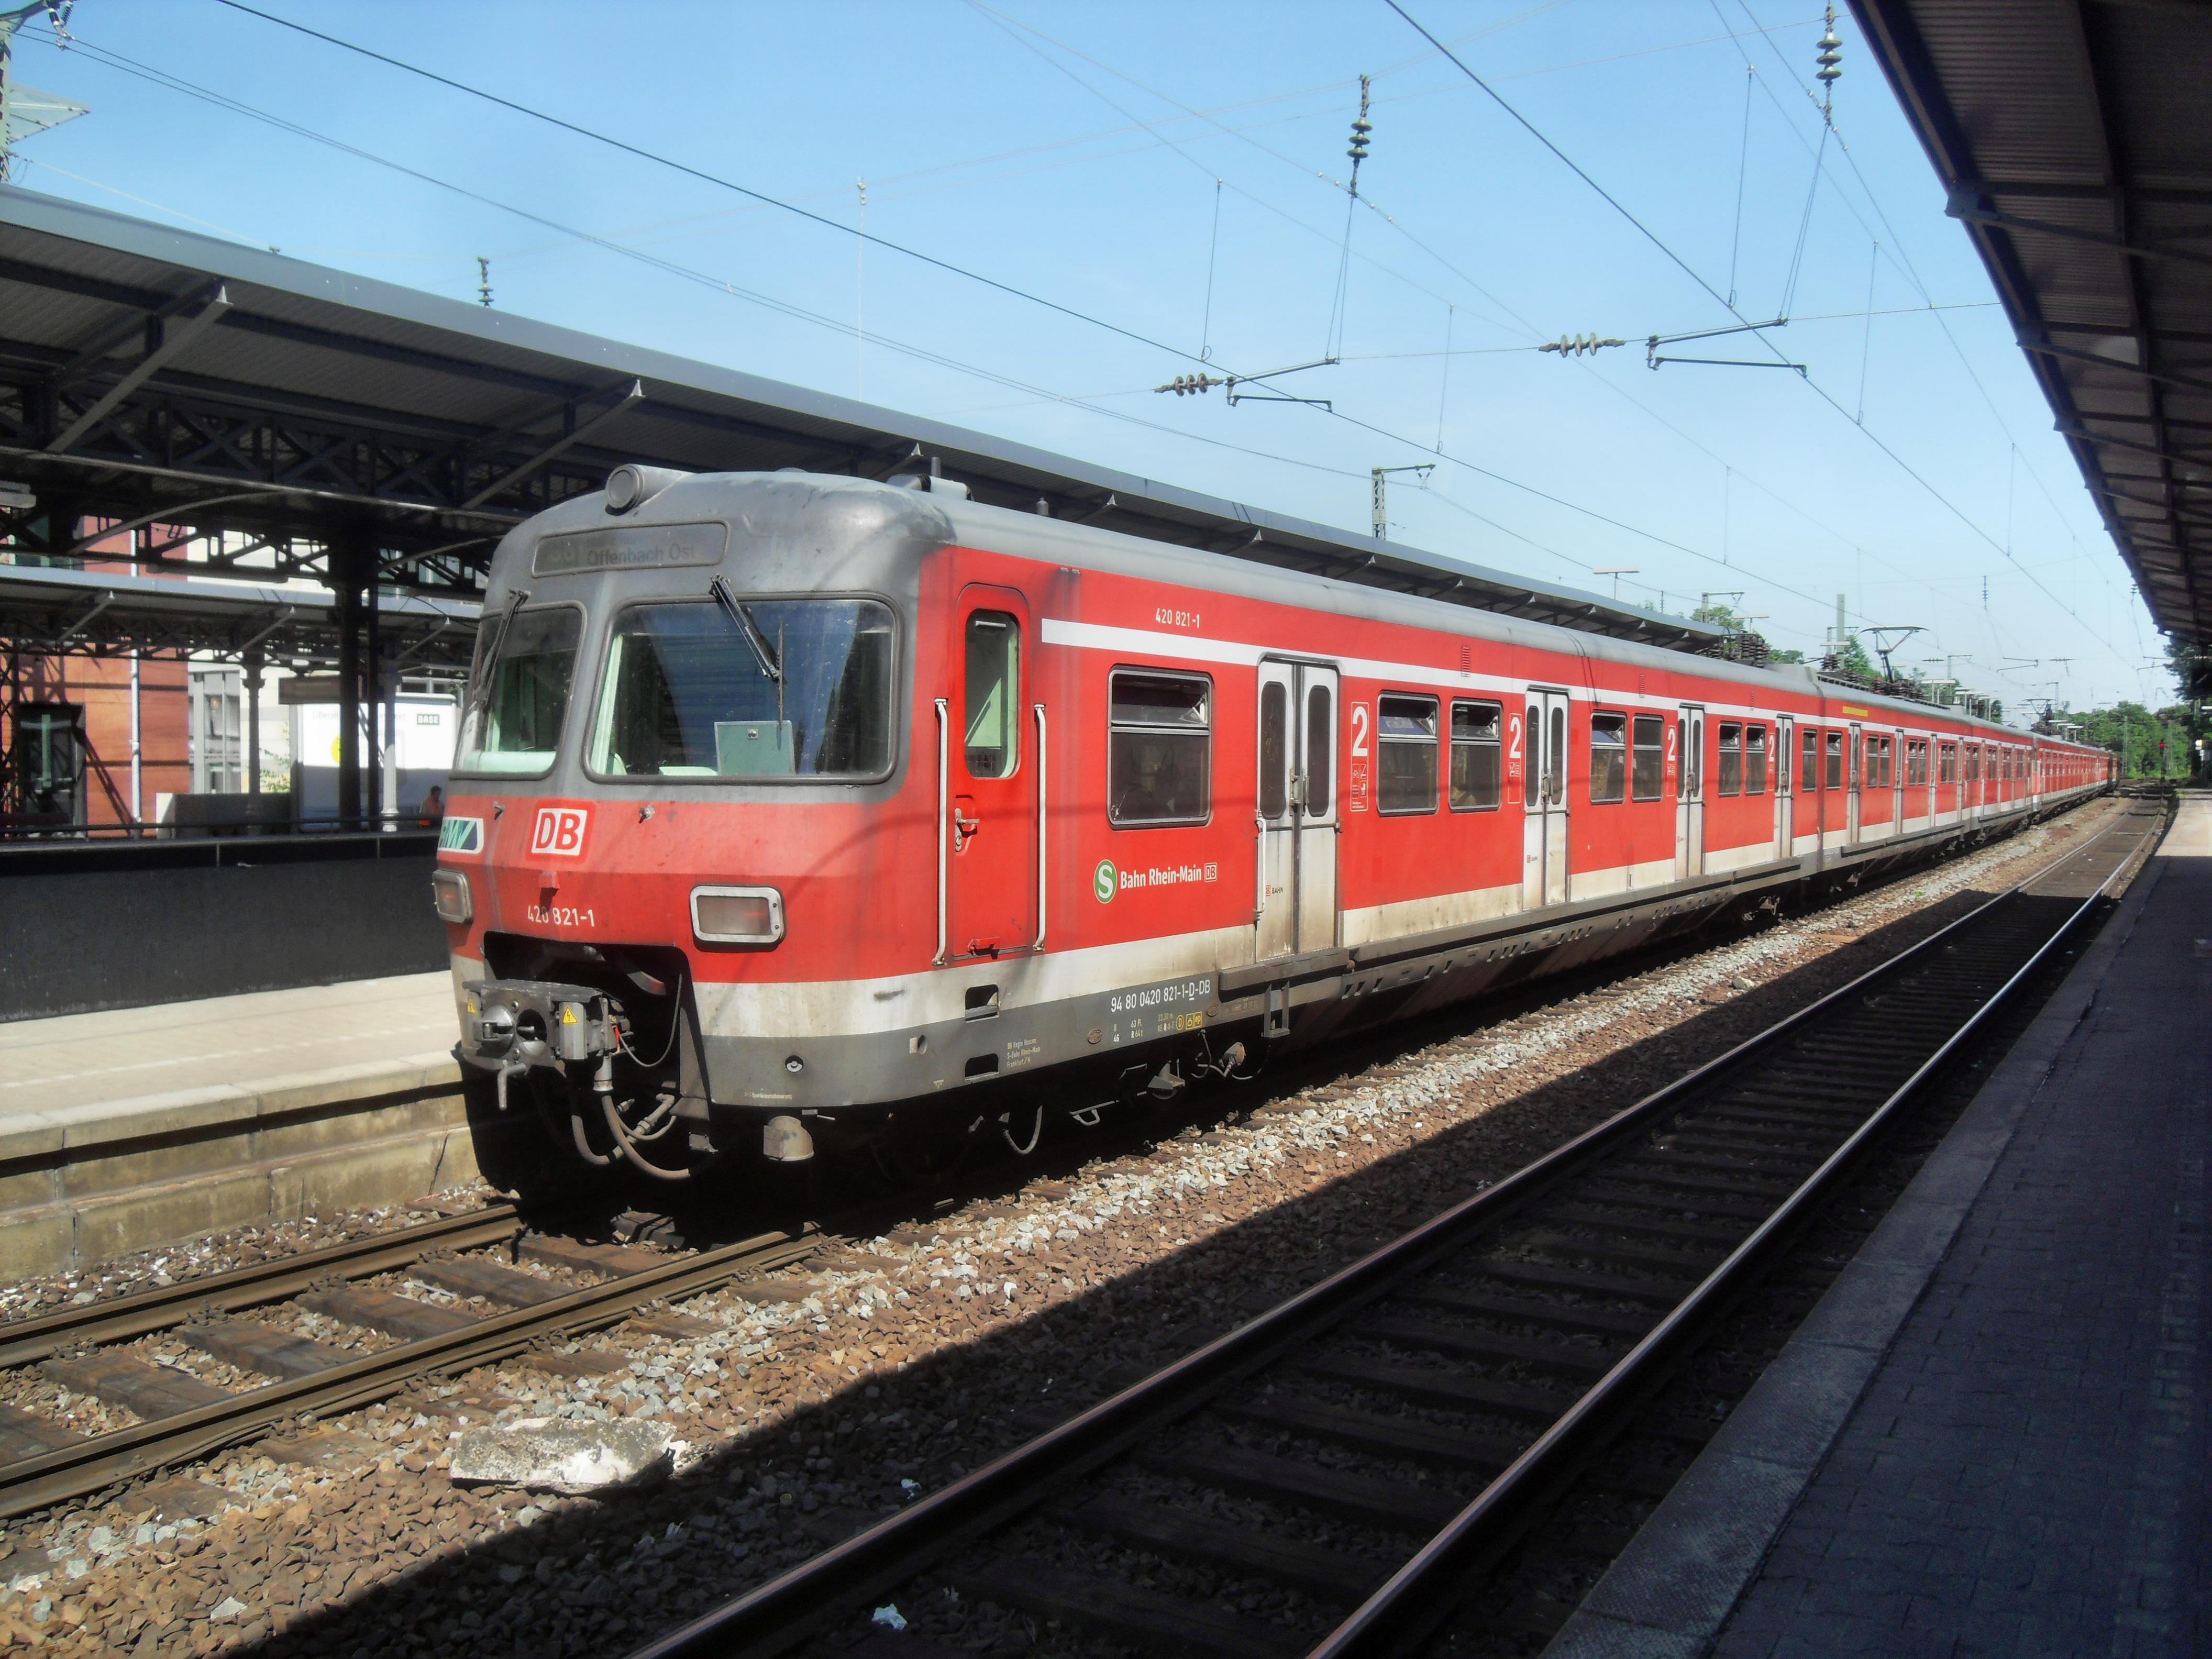 S8 Mainz Frankfurt